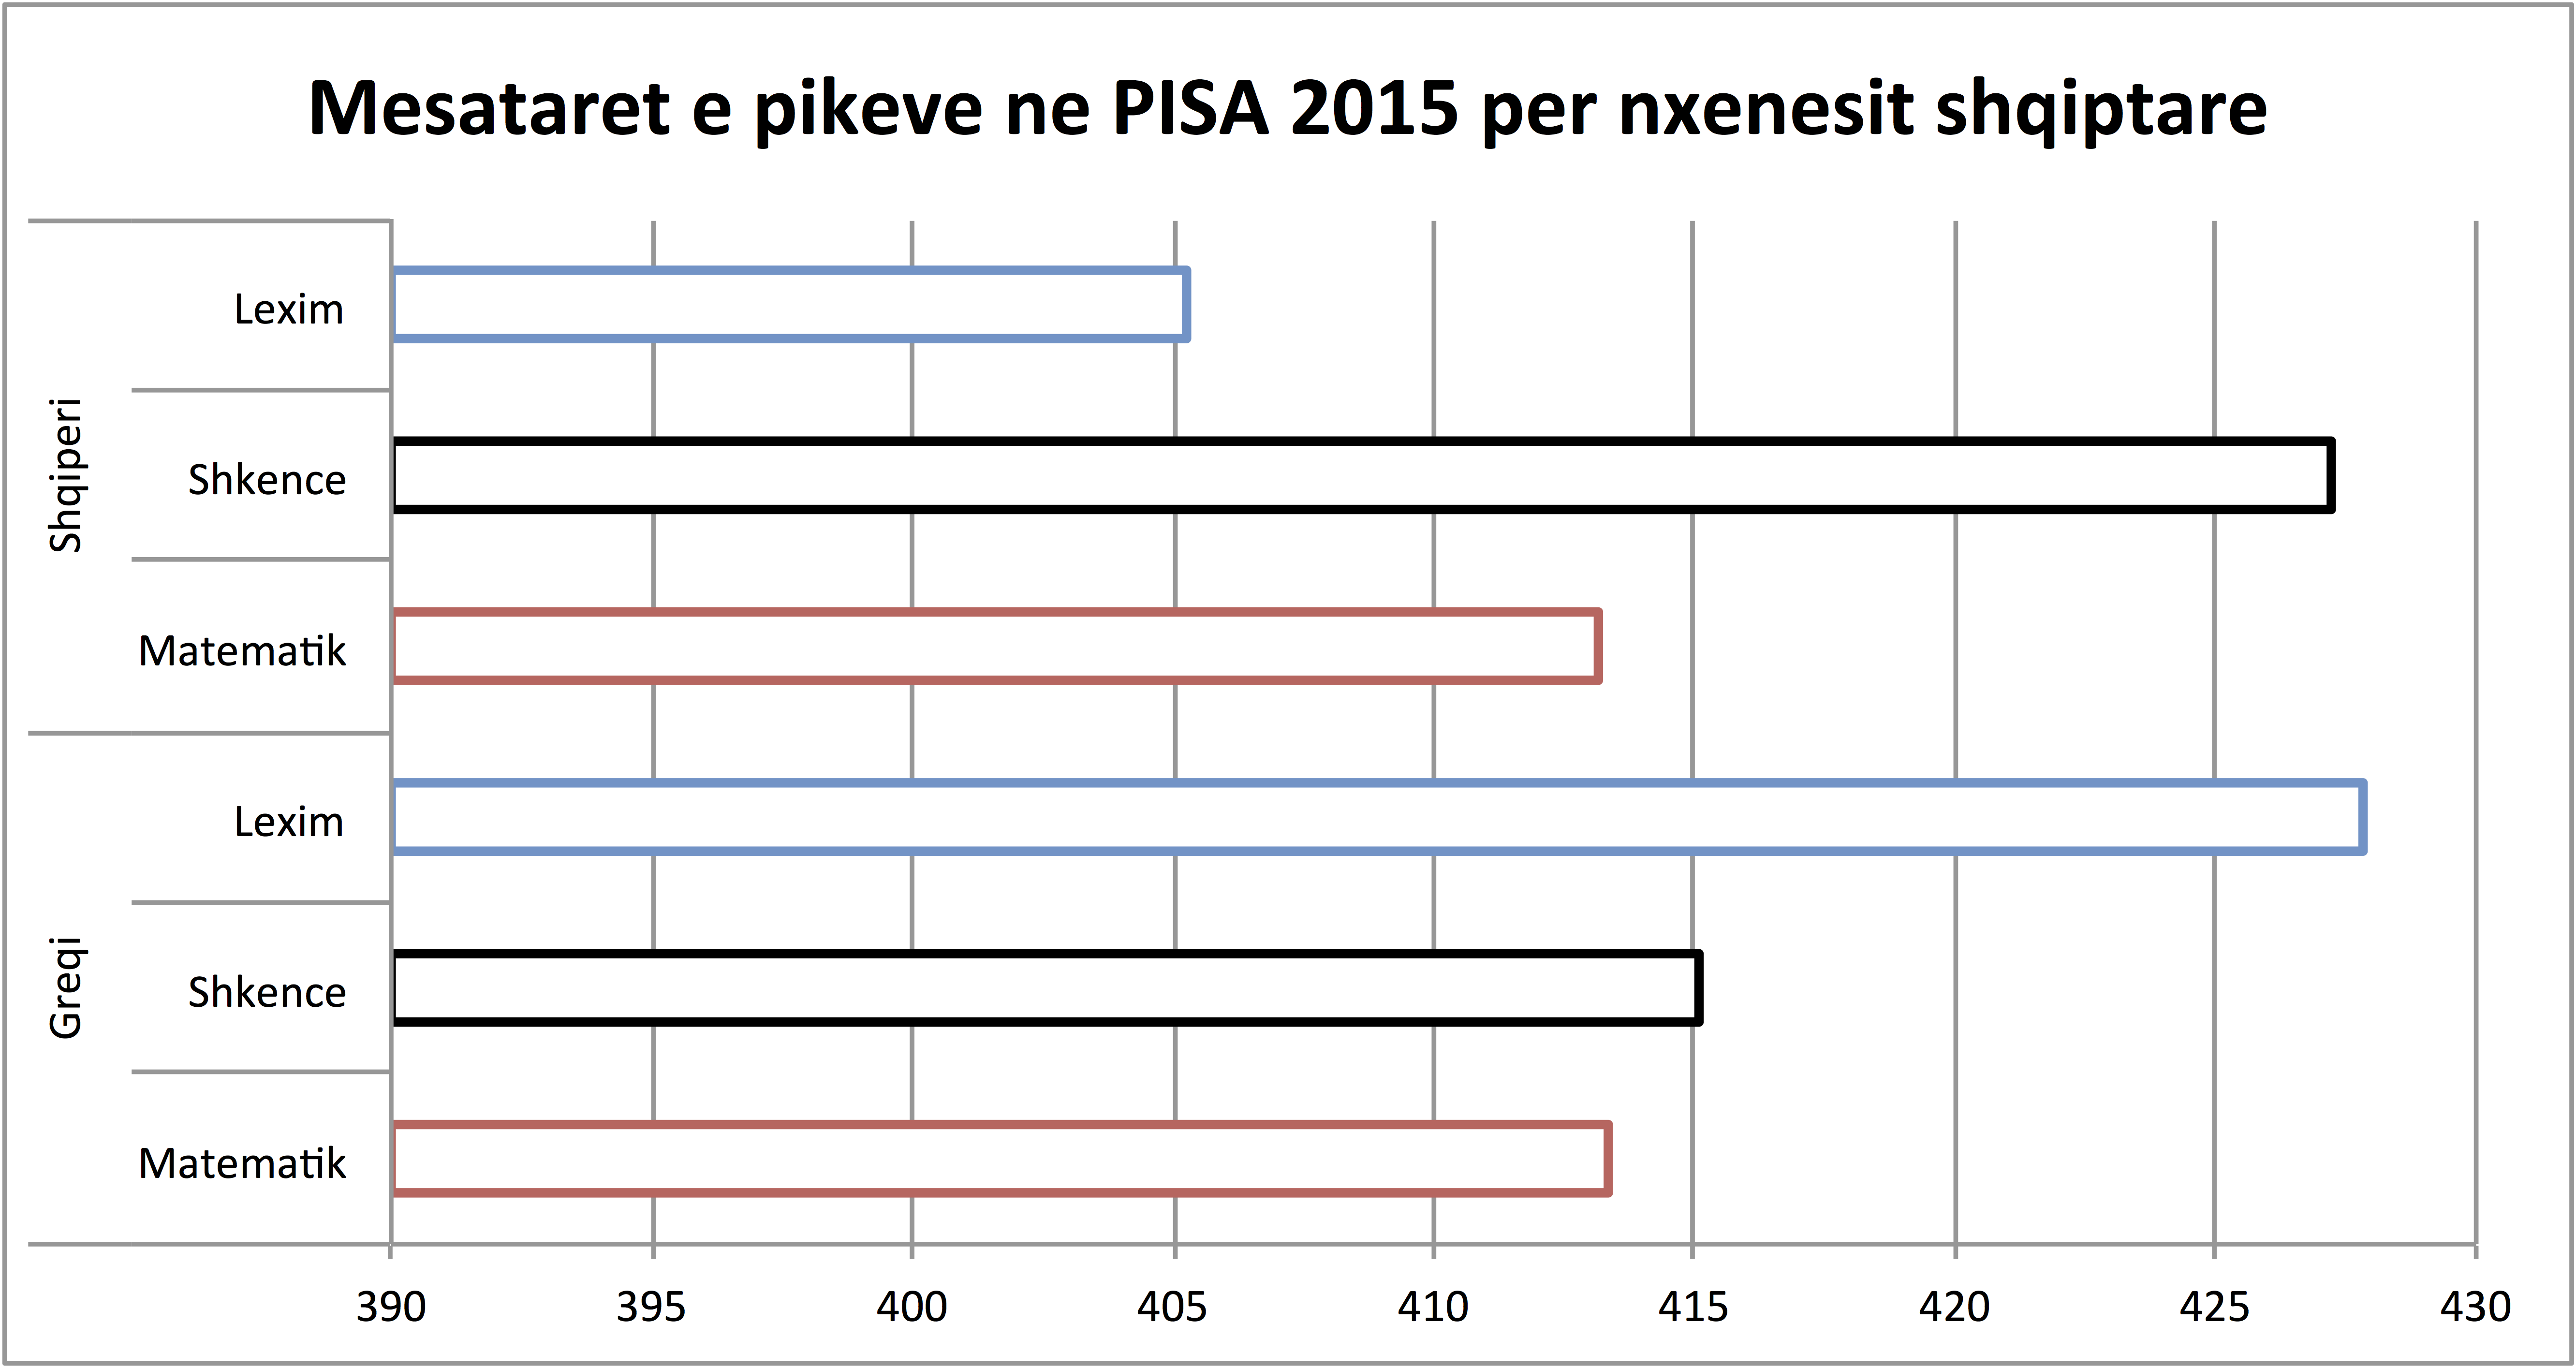 Mesatarja e arritjeve te nxenesve shqiptare ne Greqi, PISA 2015